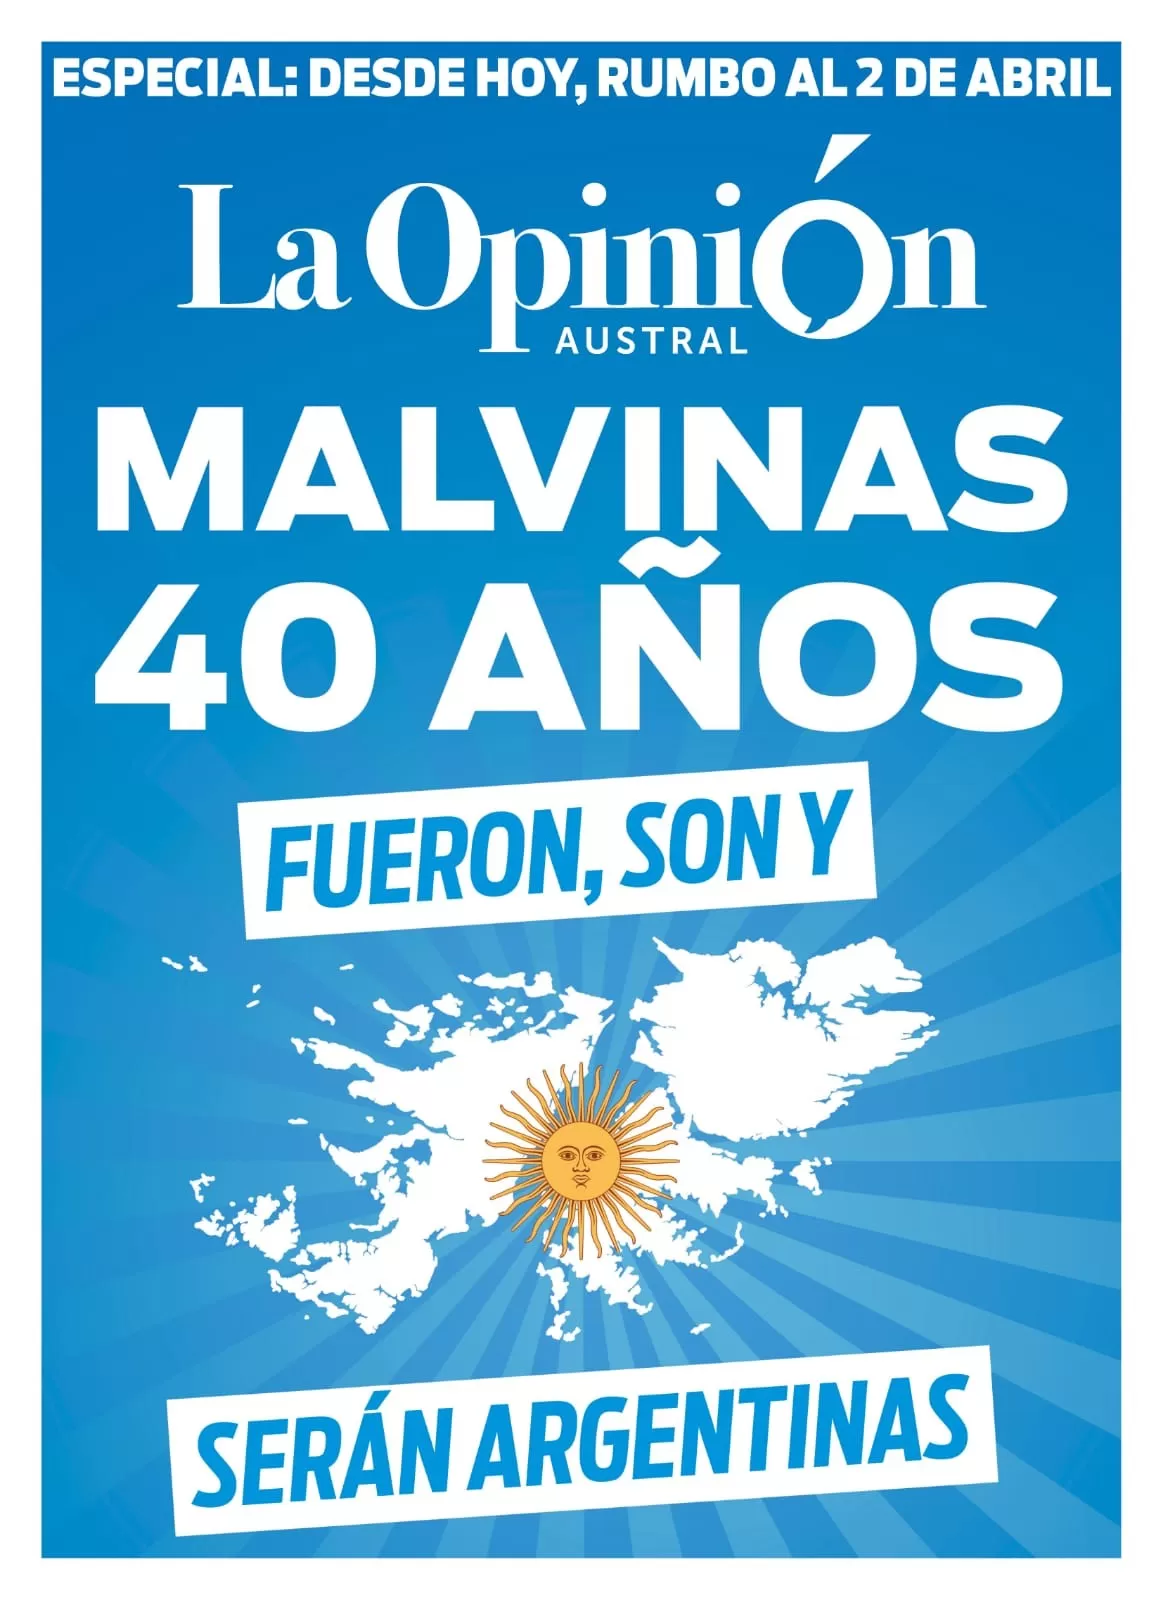 40 años! Malvinas Argentinas para siempre - Vamos!